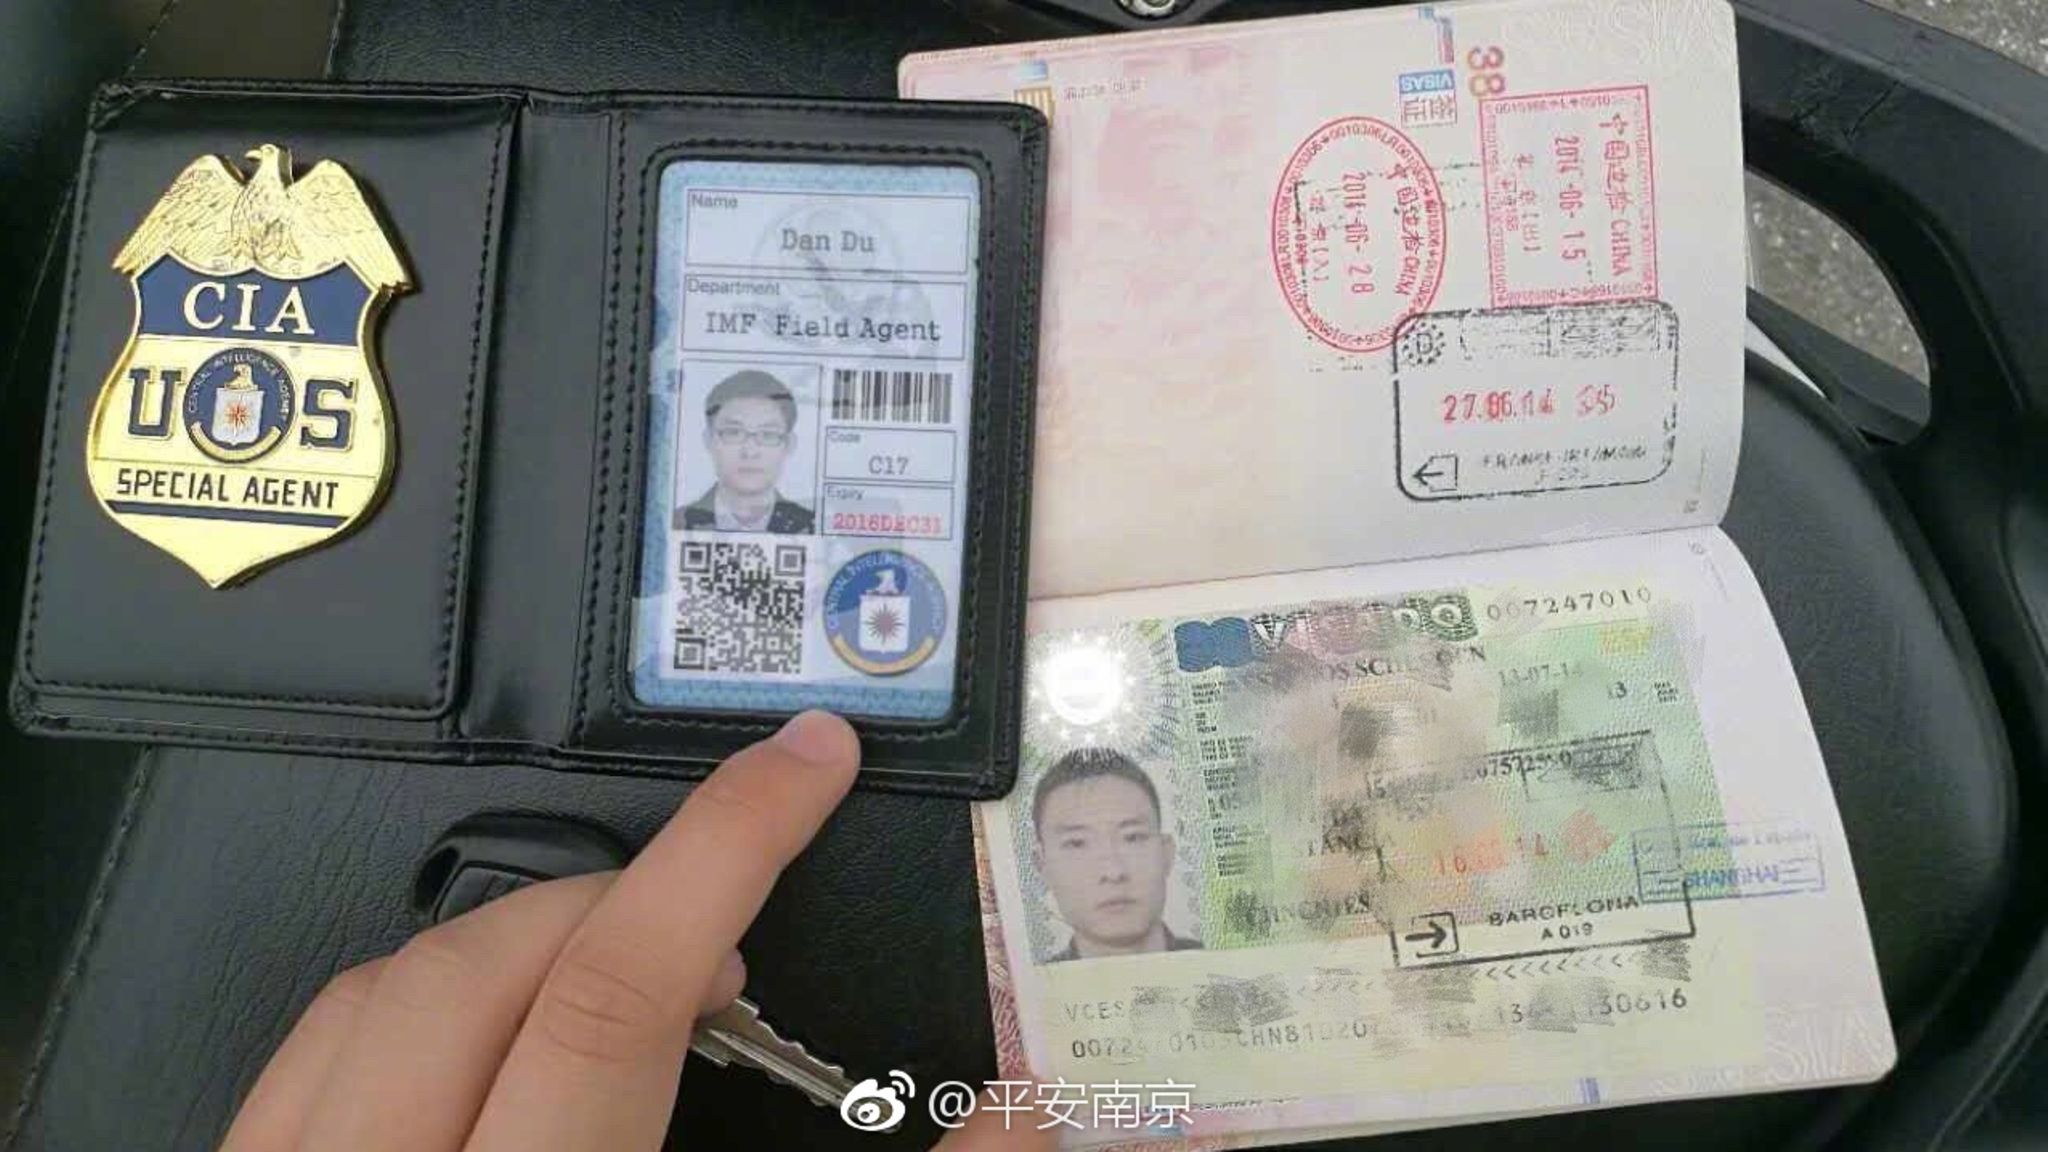 China: Mann legt bei Verkehrskontrolle gefälschten CIA-Ausweis vor